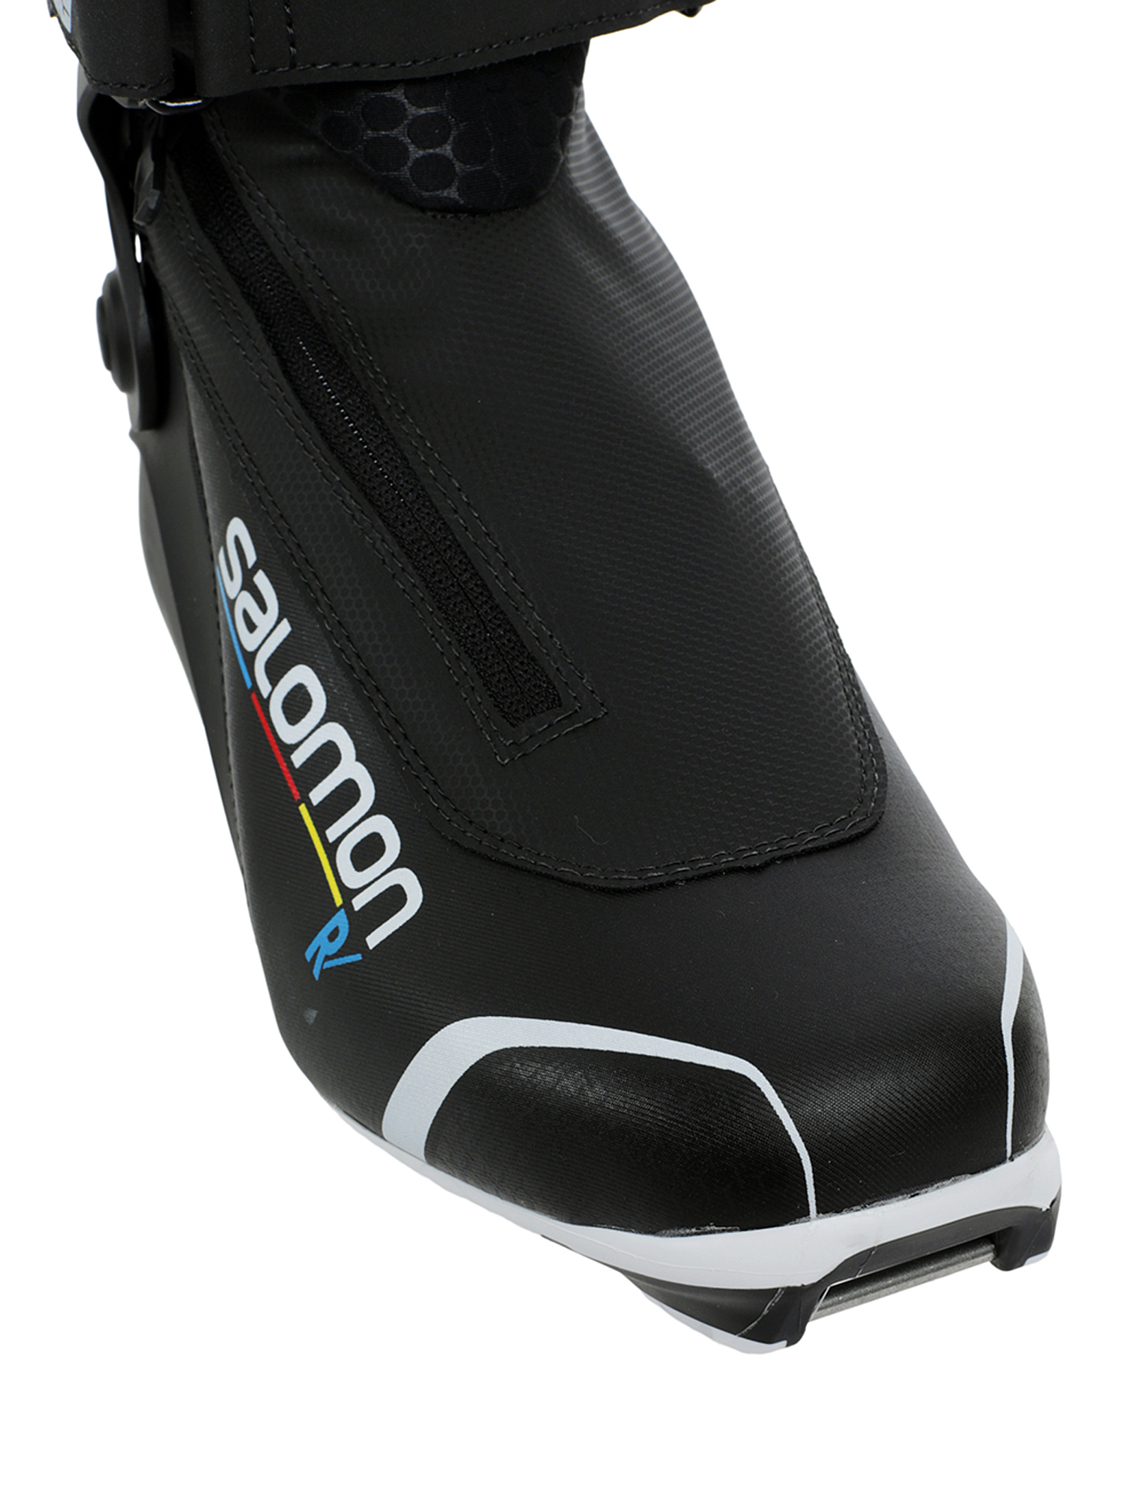 Лыжные ботинки SALOMON R Prolink Black